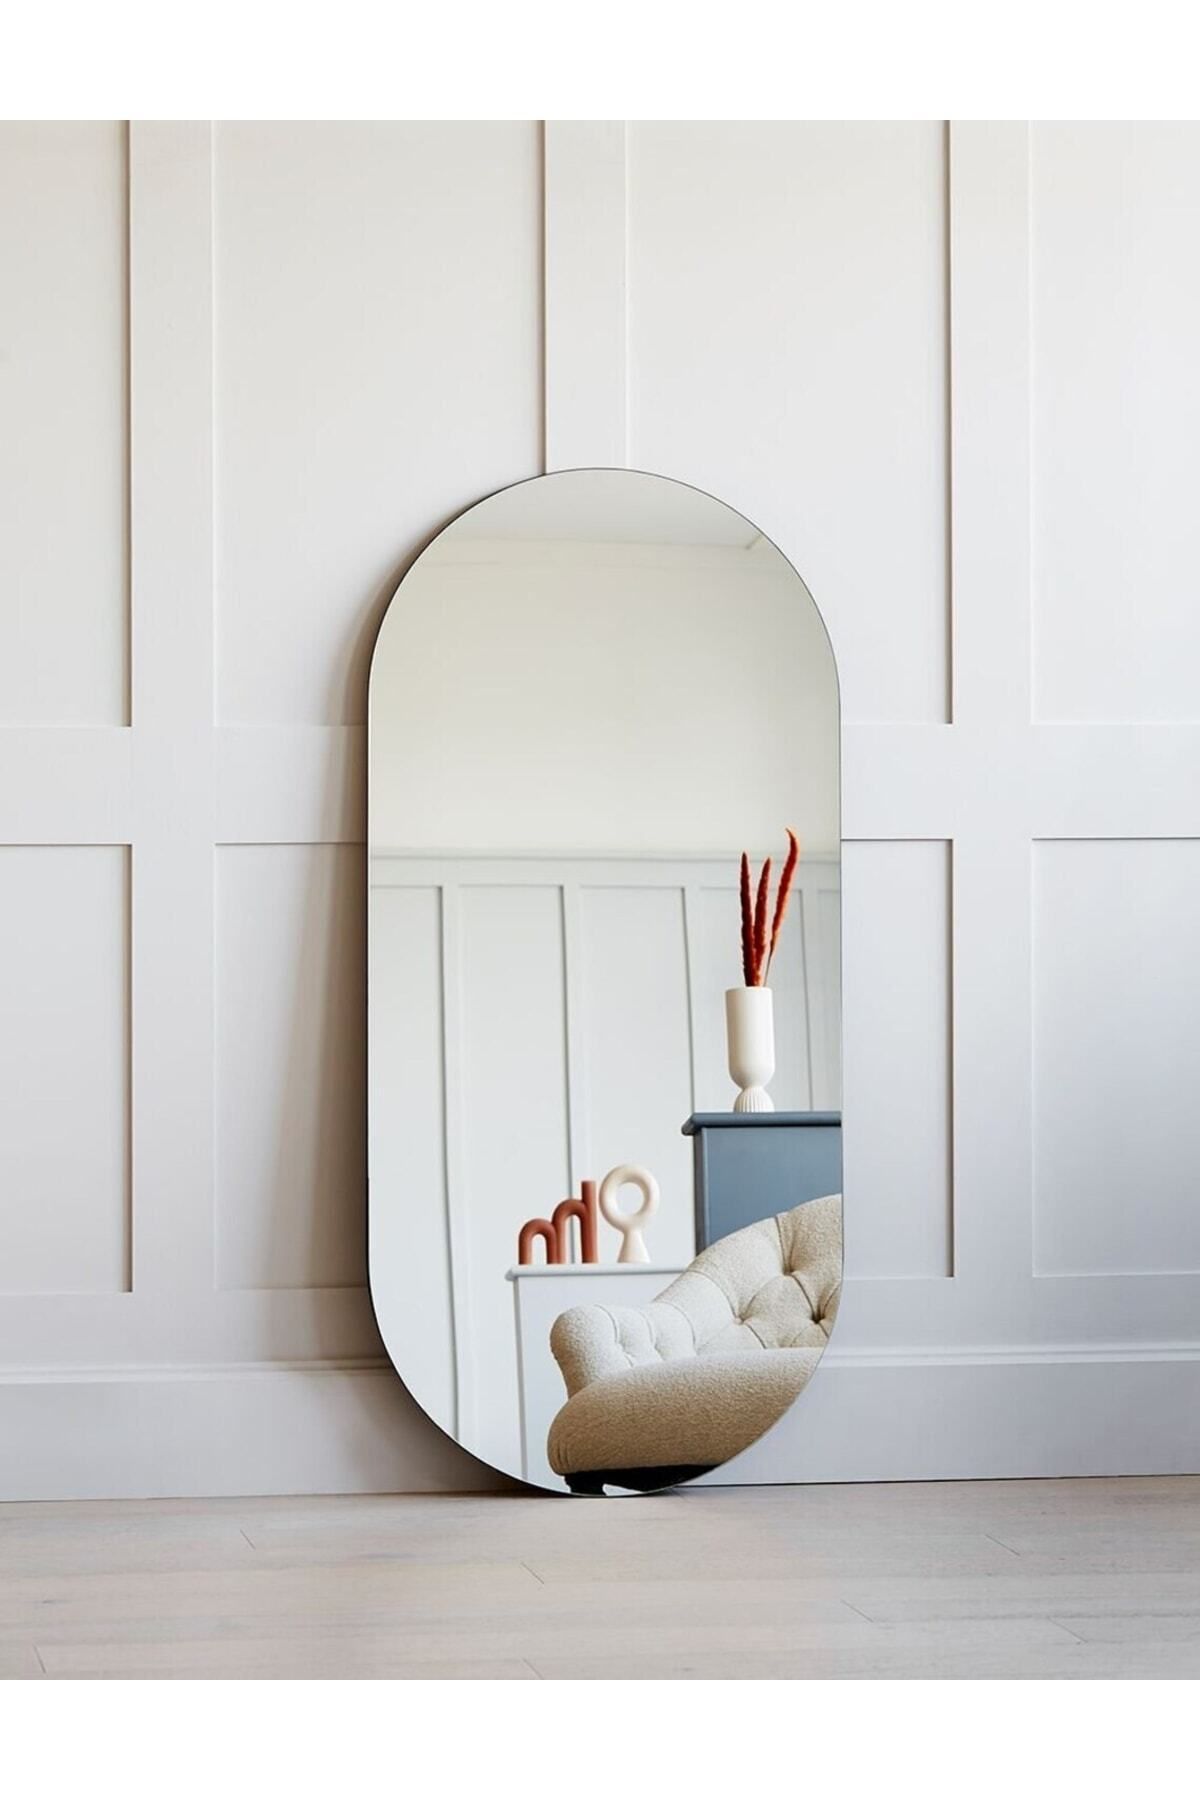 CG HOME 90 X 50 Cm Duvar Aynası, Dekoratif Ayna, Konsol Aynası, Hol Aynası, Dresuar Aynası,banyo Wc Aynası